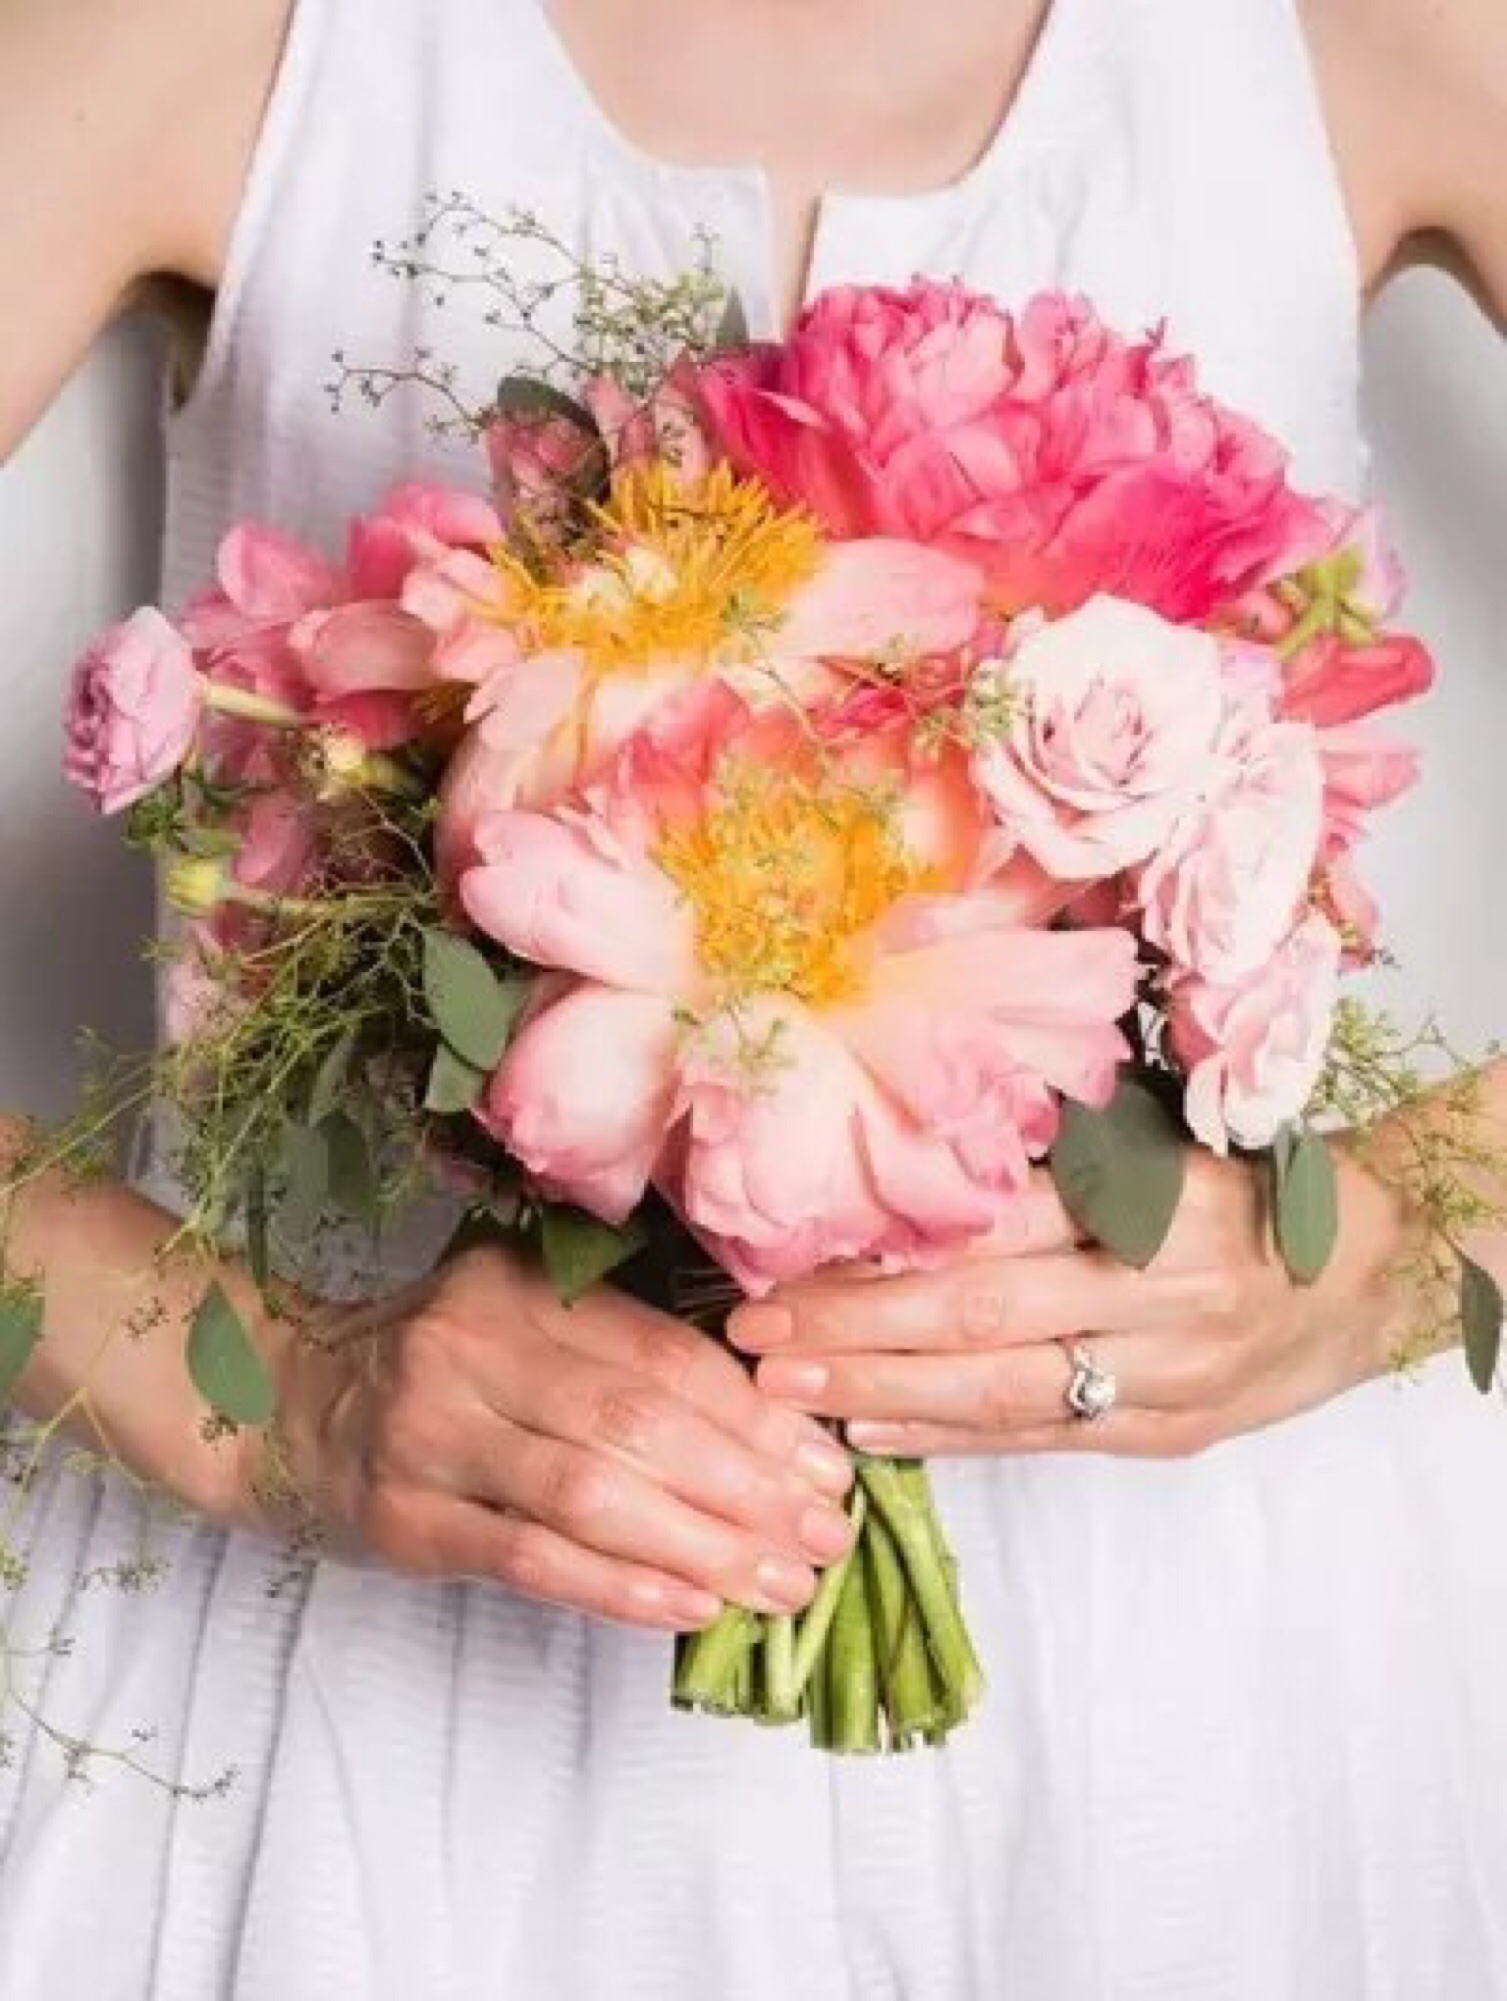 新娘捧花應該這樣挑! 8款 鮮花不凋花捧花款式推薦 – 婚禮籌備懶人包